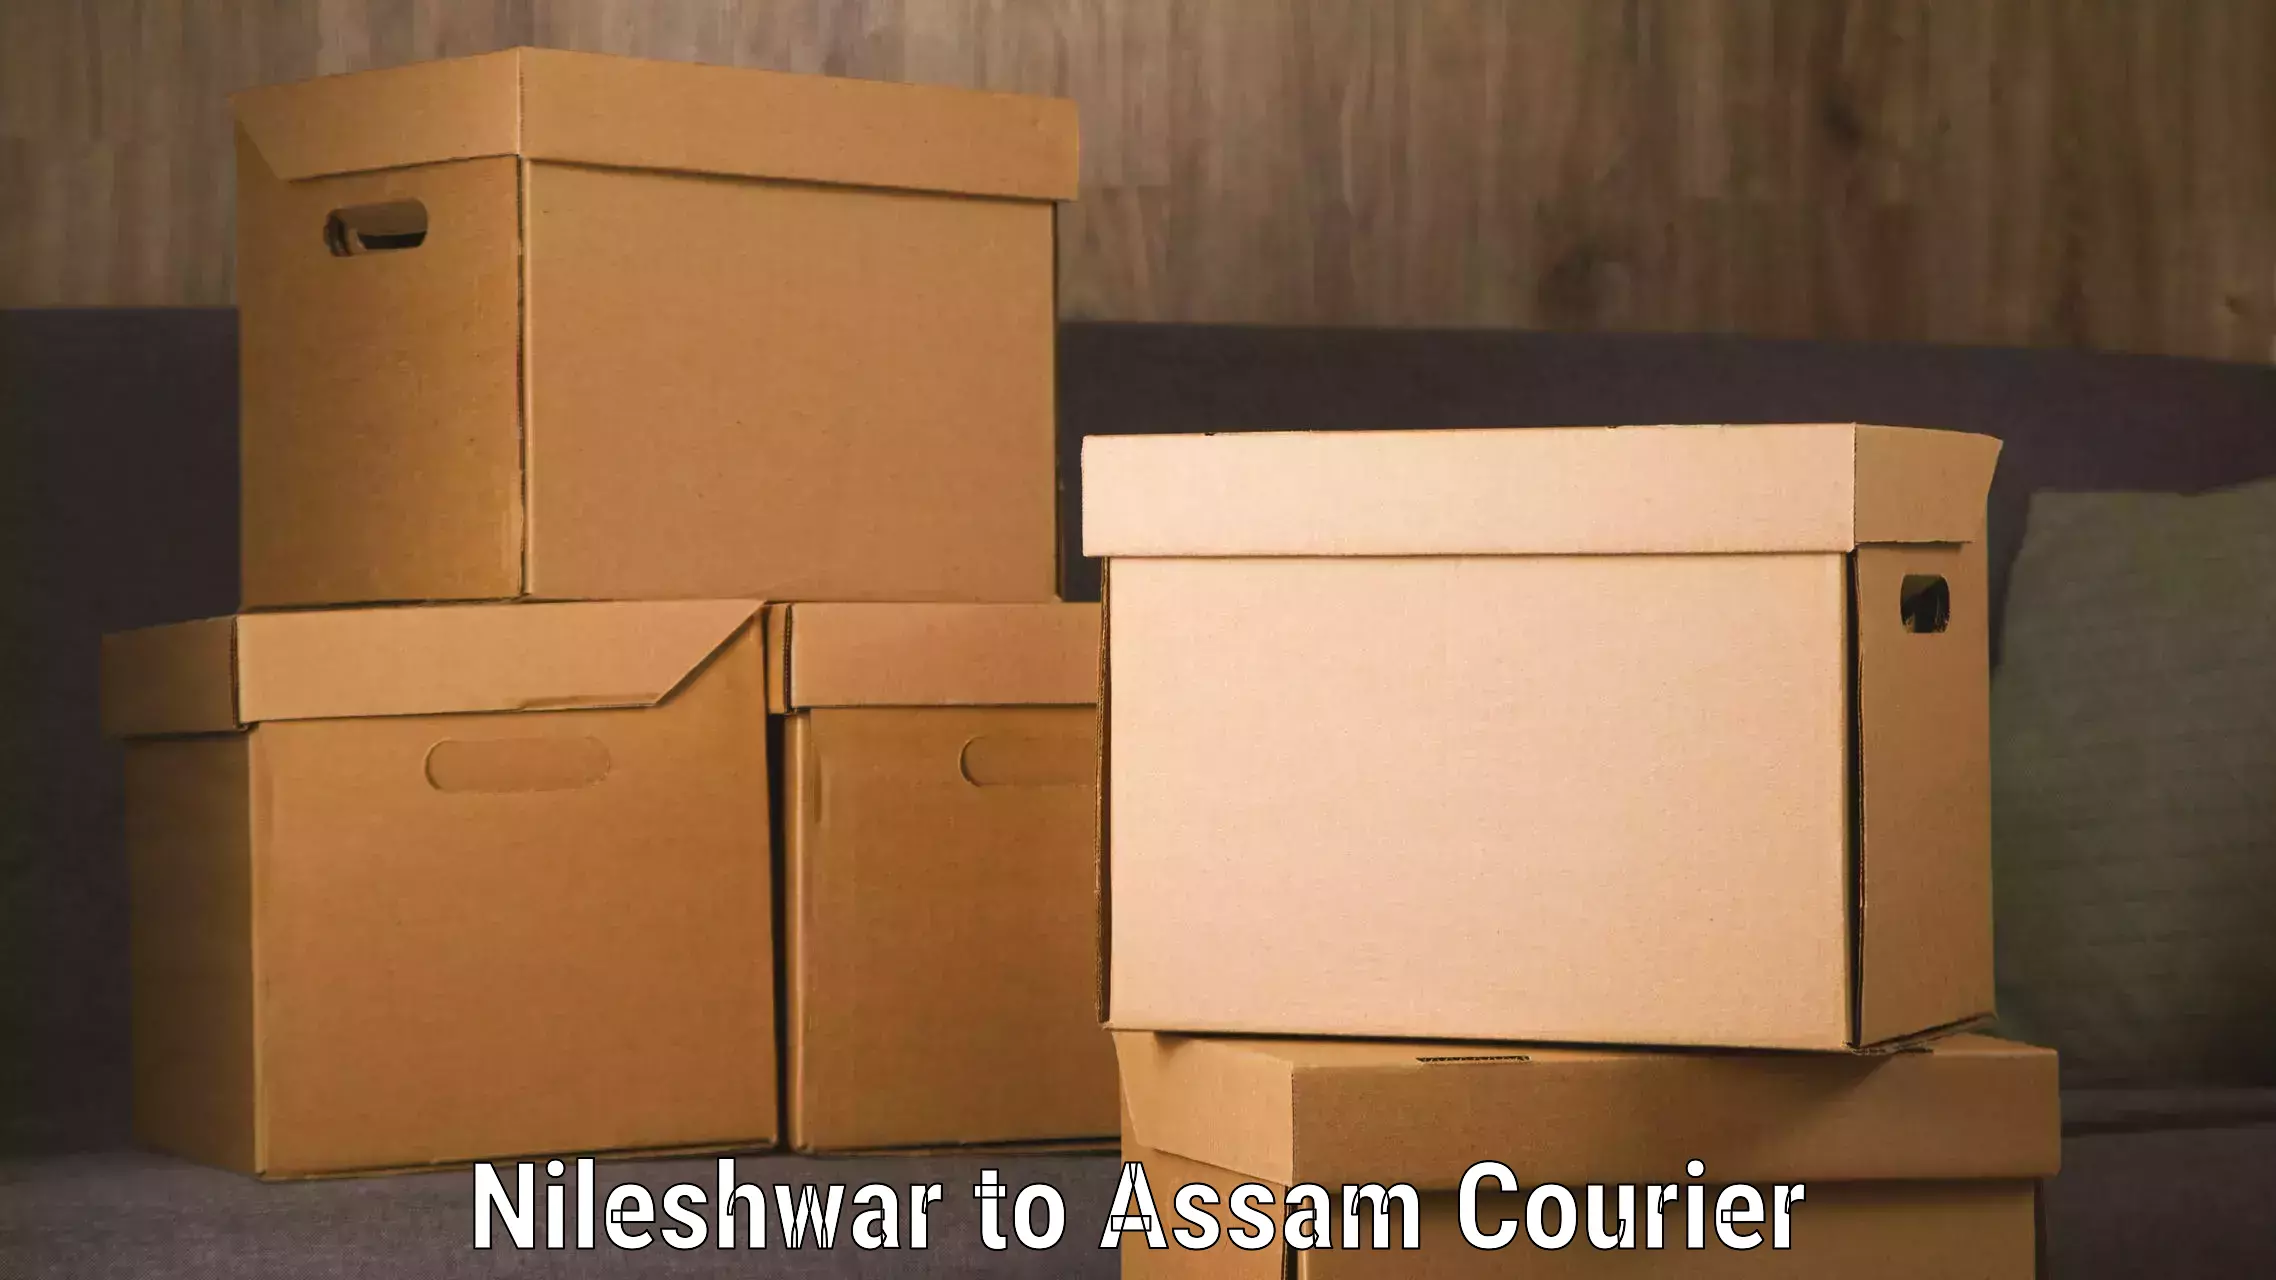 Express logistics service Nileshwar to Sivasagar